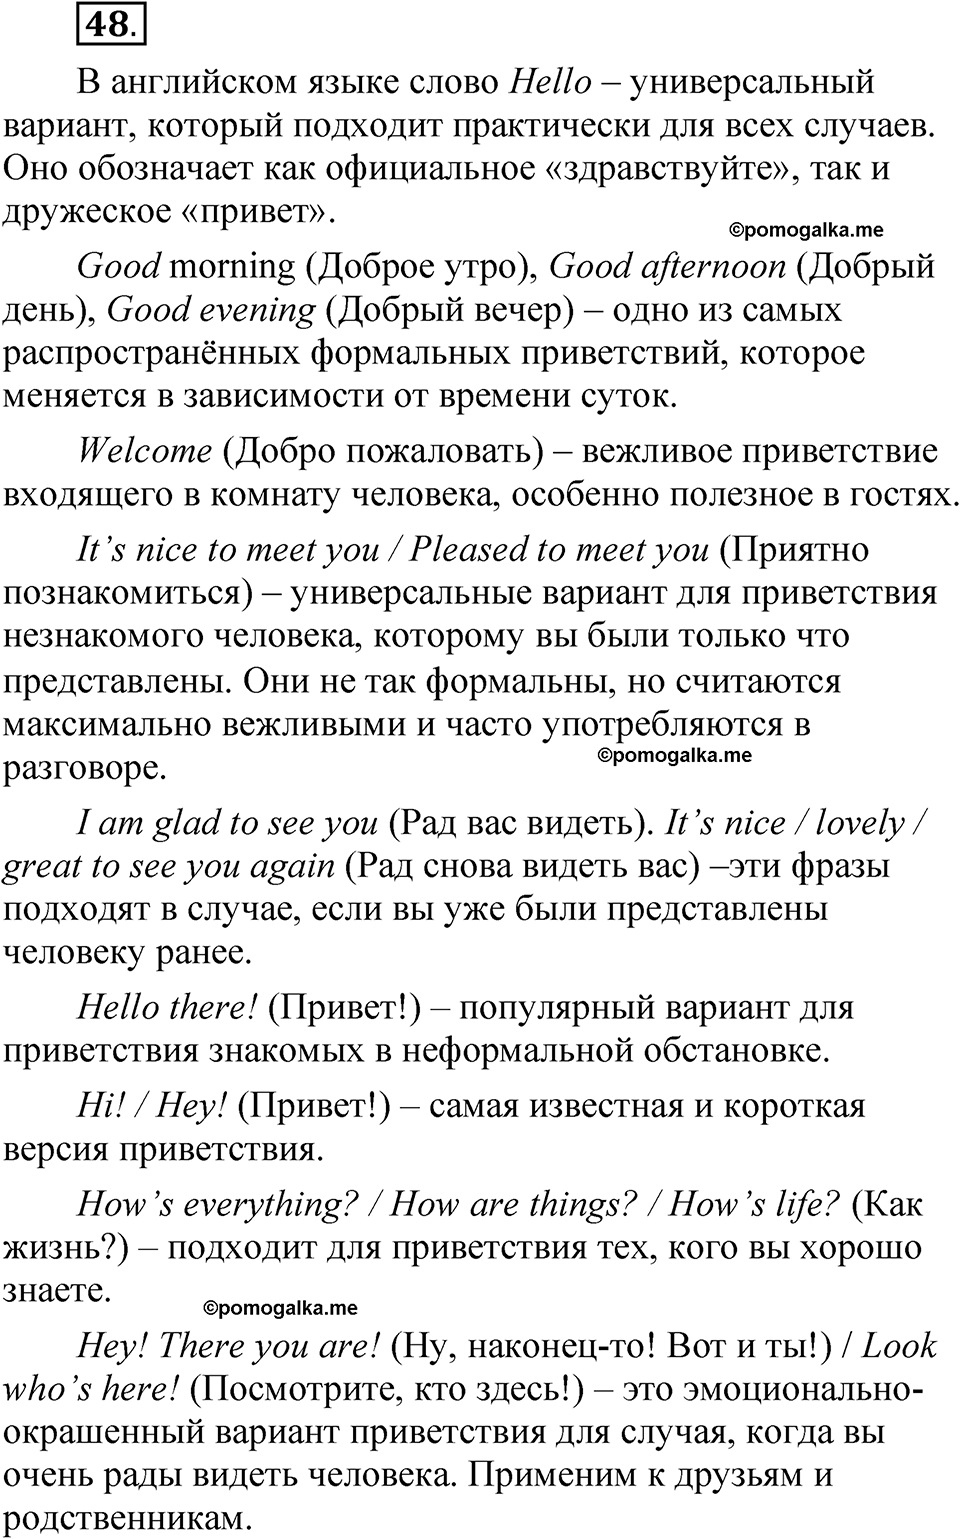 страница 37 упражнение 48 русский язык 5 класс Быстрова, Кибирева 1 часть 2021 год